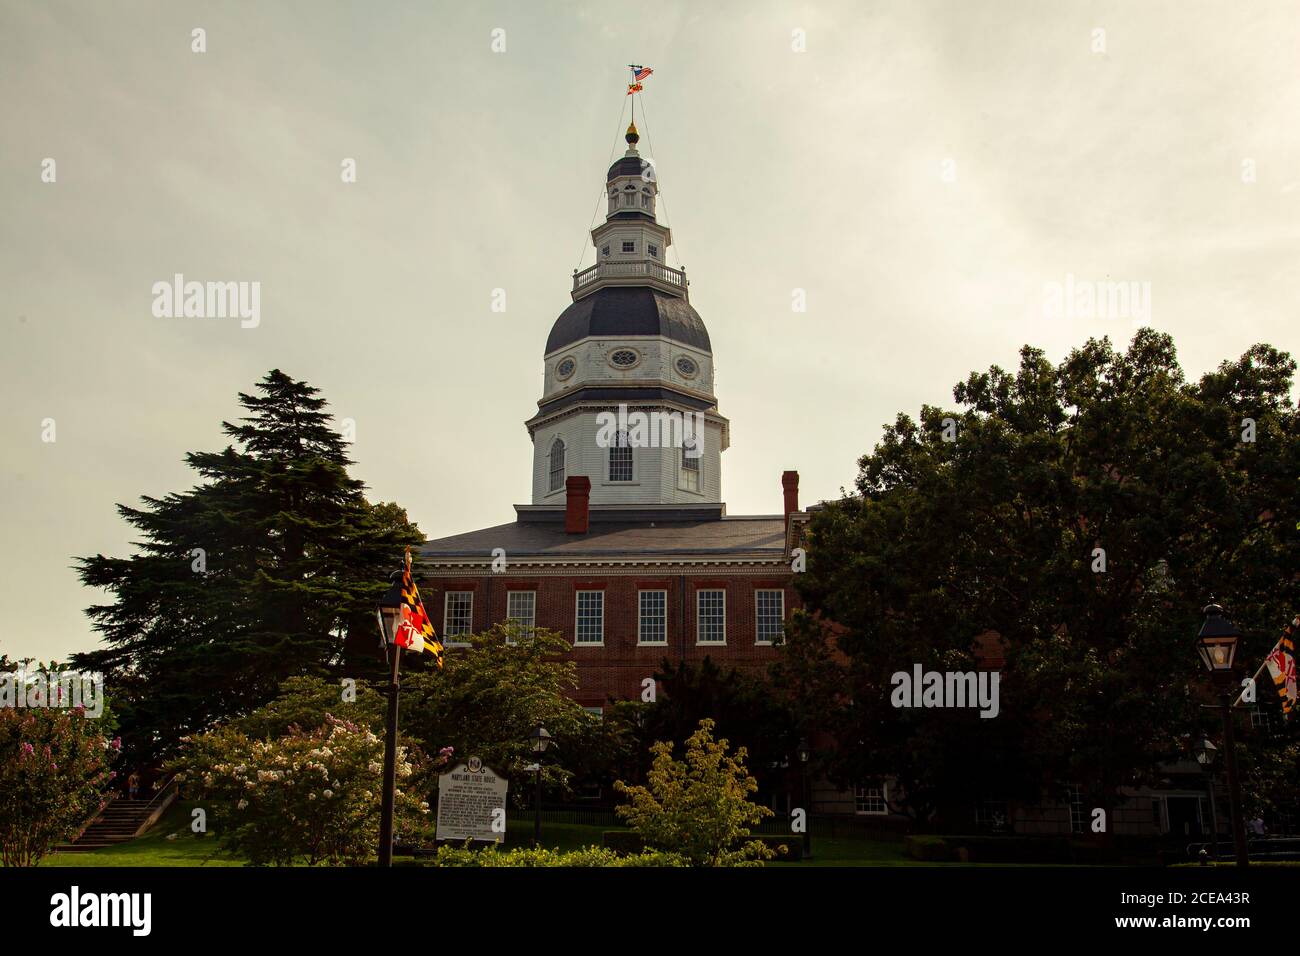 Annapolis, MD 08/21/2020: Edificio del Maryland state House (state Capitol) ad Annapolis. L'immagine mostra l'iconica torre con la bandiera del Maryland su di essa Foto Stock